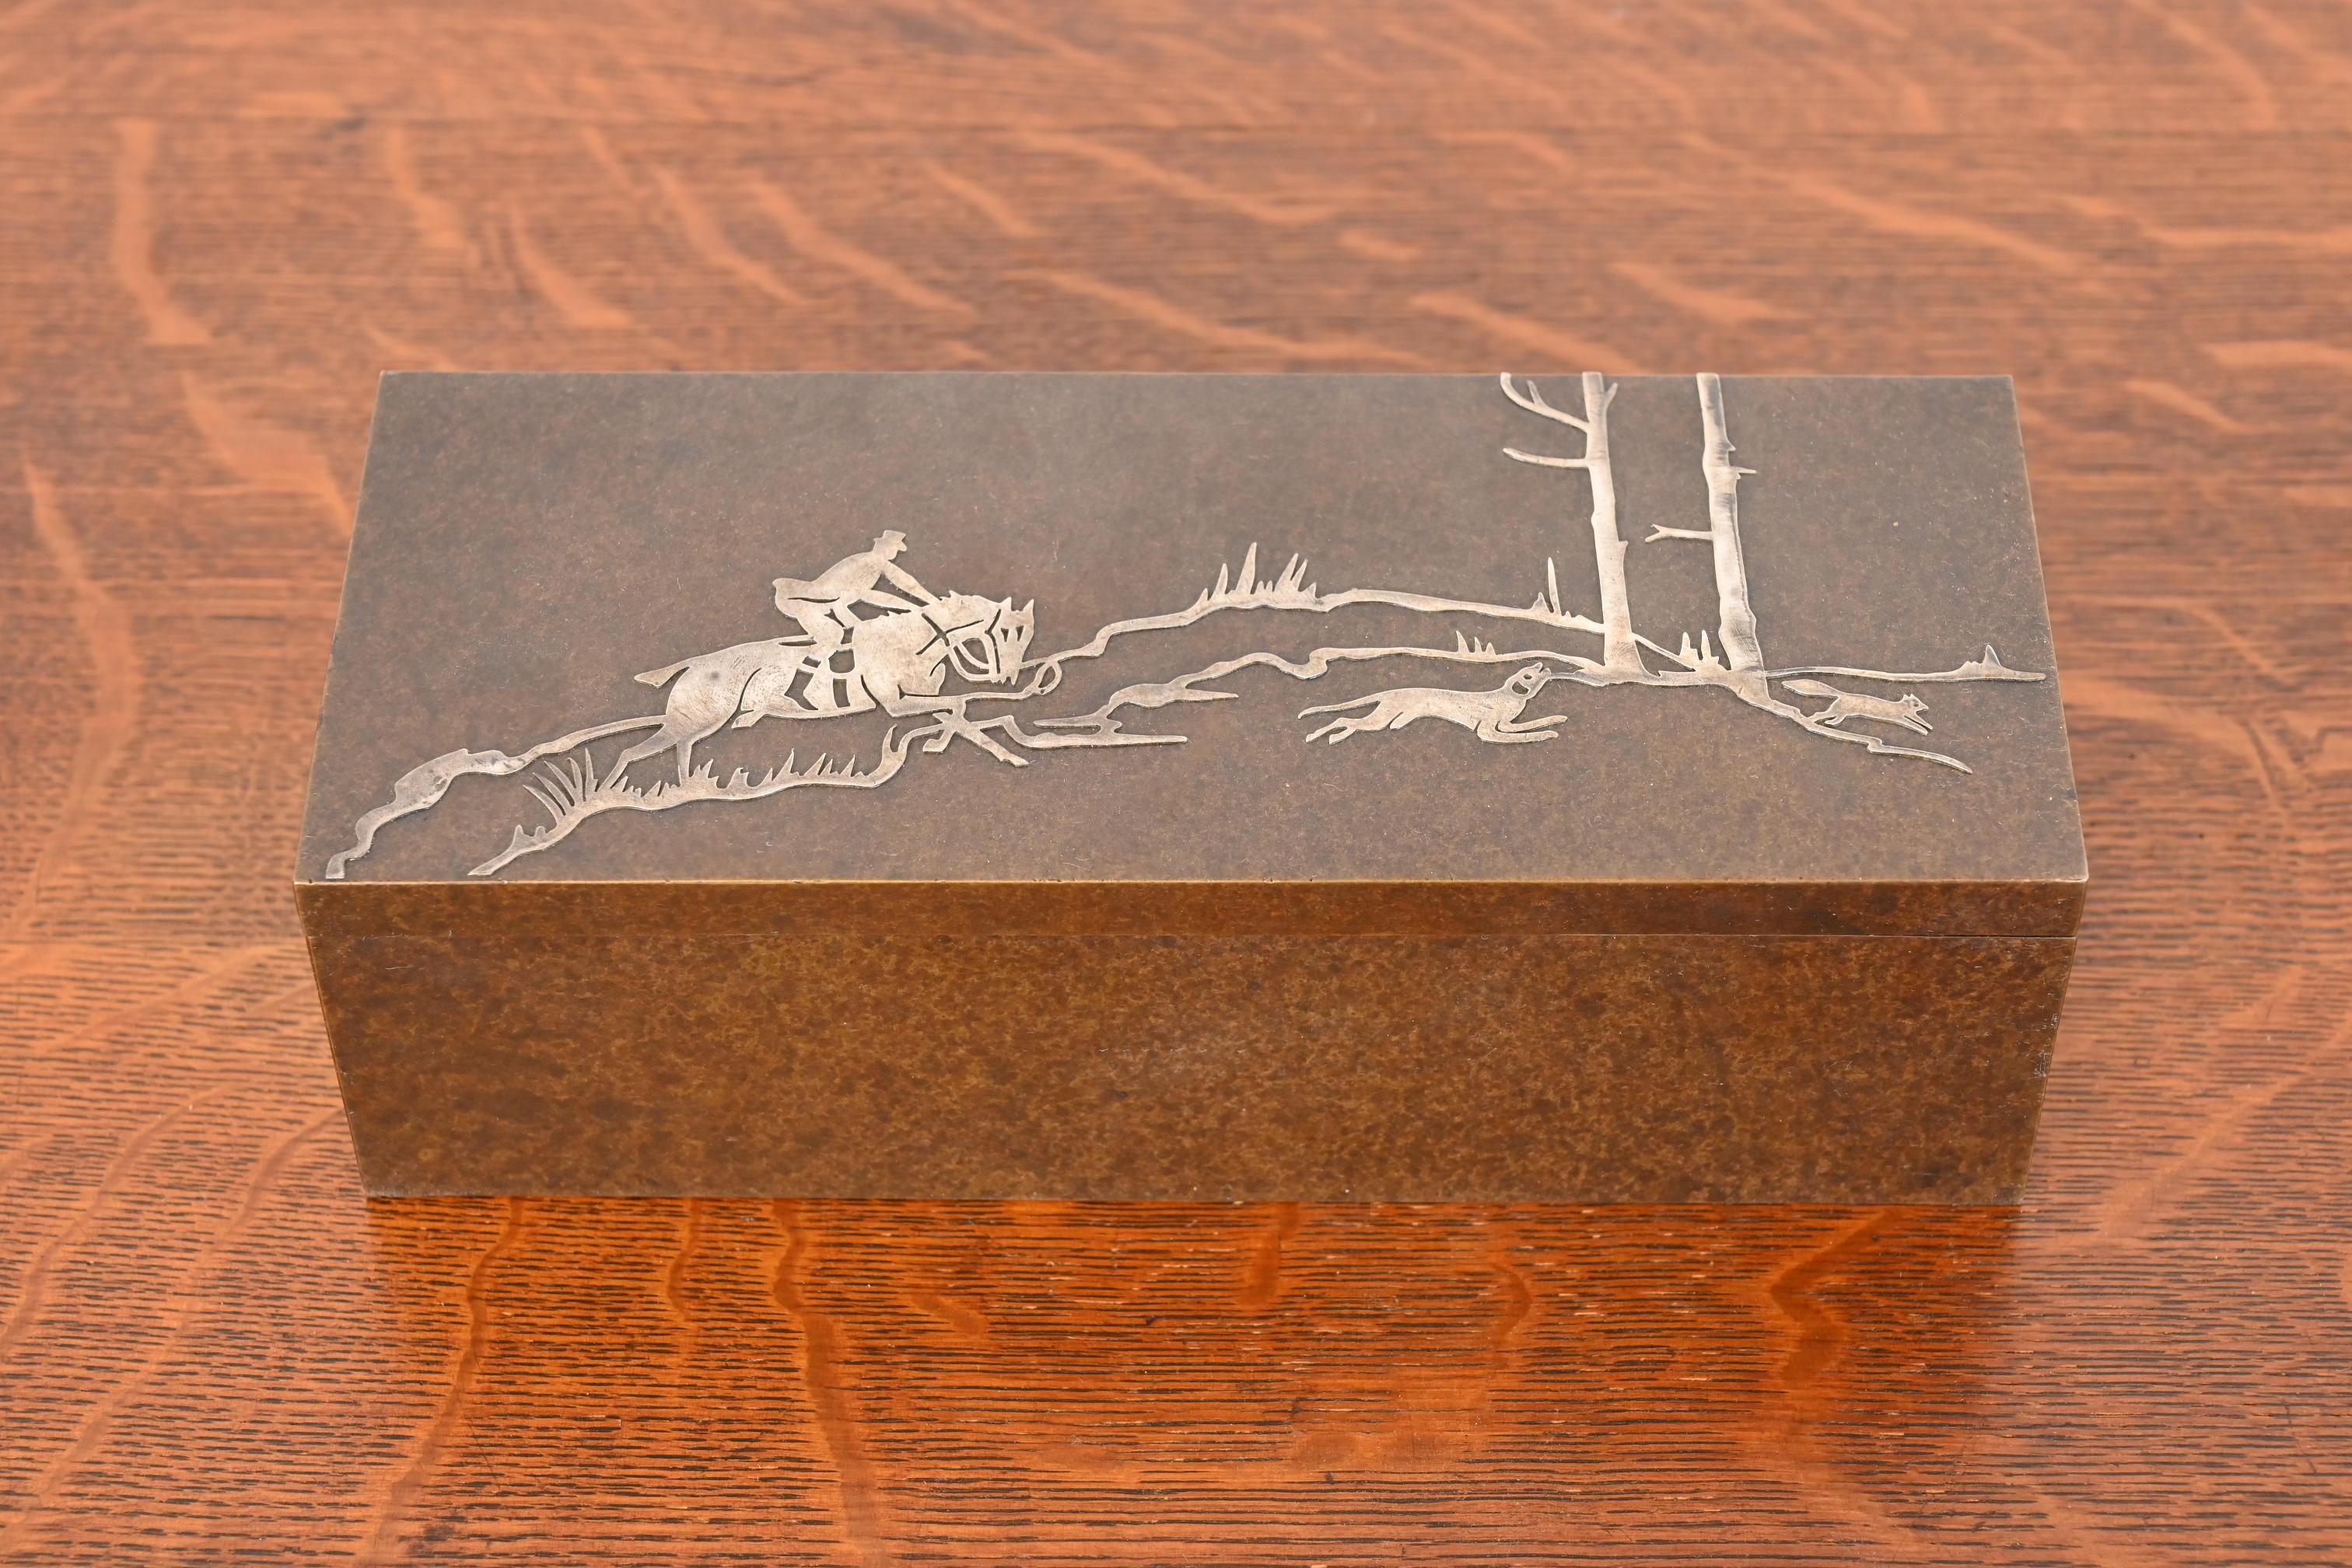 Eine prächtige antike Arts & Crafts Periode Sterling Silber auf Bronze Zeder gefüttert Schreibtisch Box oder Zigarren Humidor

Von Heintz Art Metal Shop (signiert auf der Unterseite)

USA, Anfang 20. Jahrhundert

Maße: 8,5 